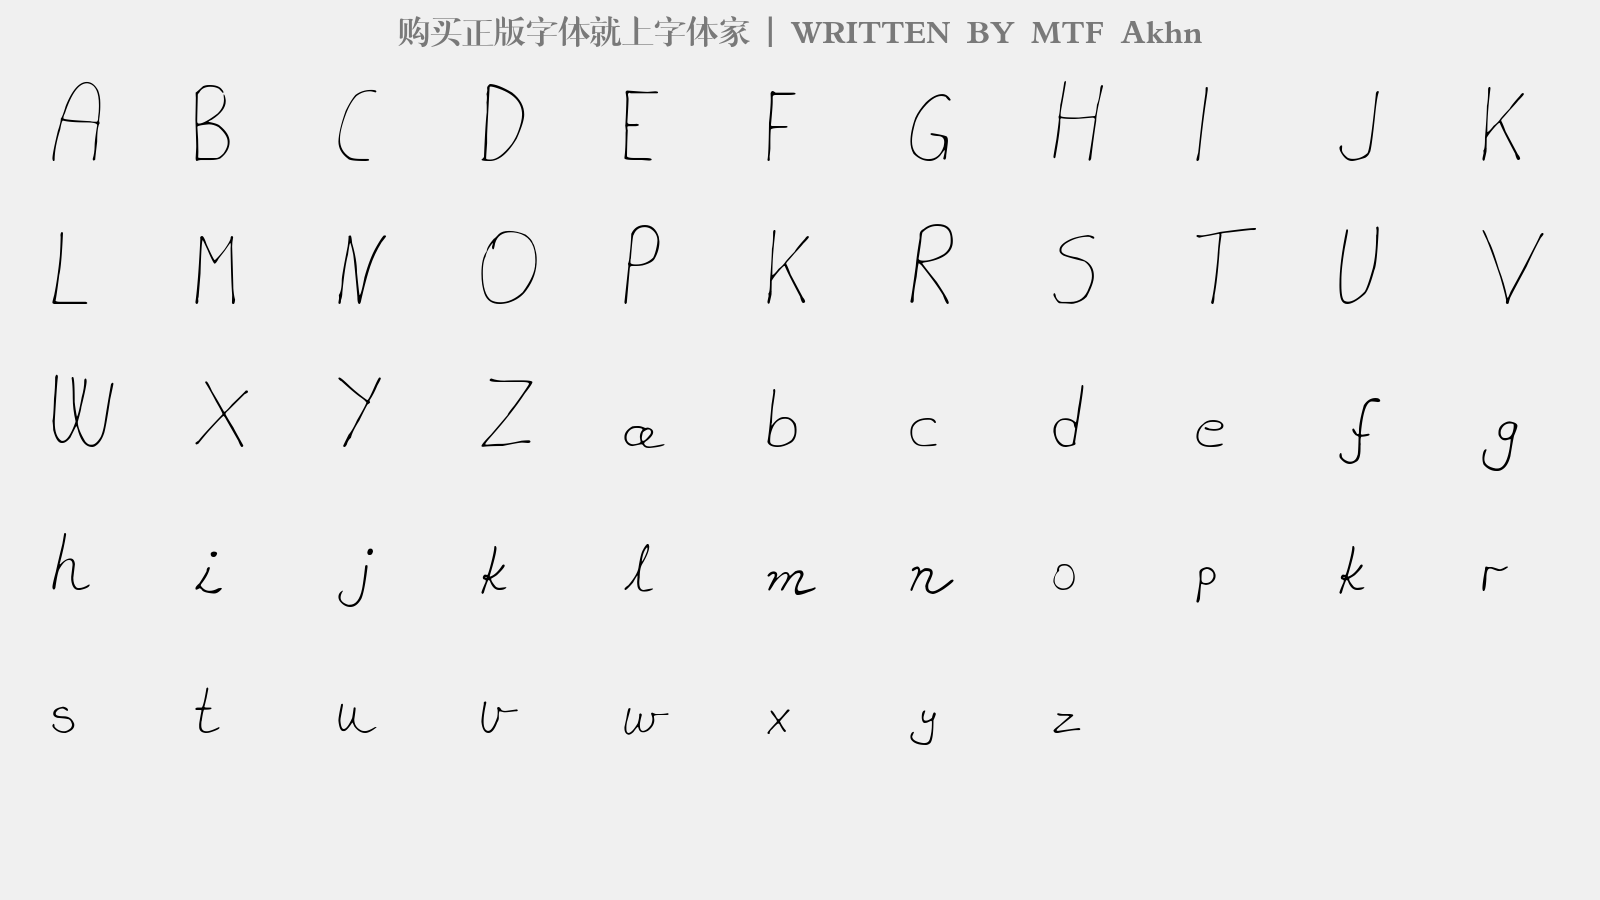 MTF Akhn - 大写字母/小写字母/数字